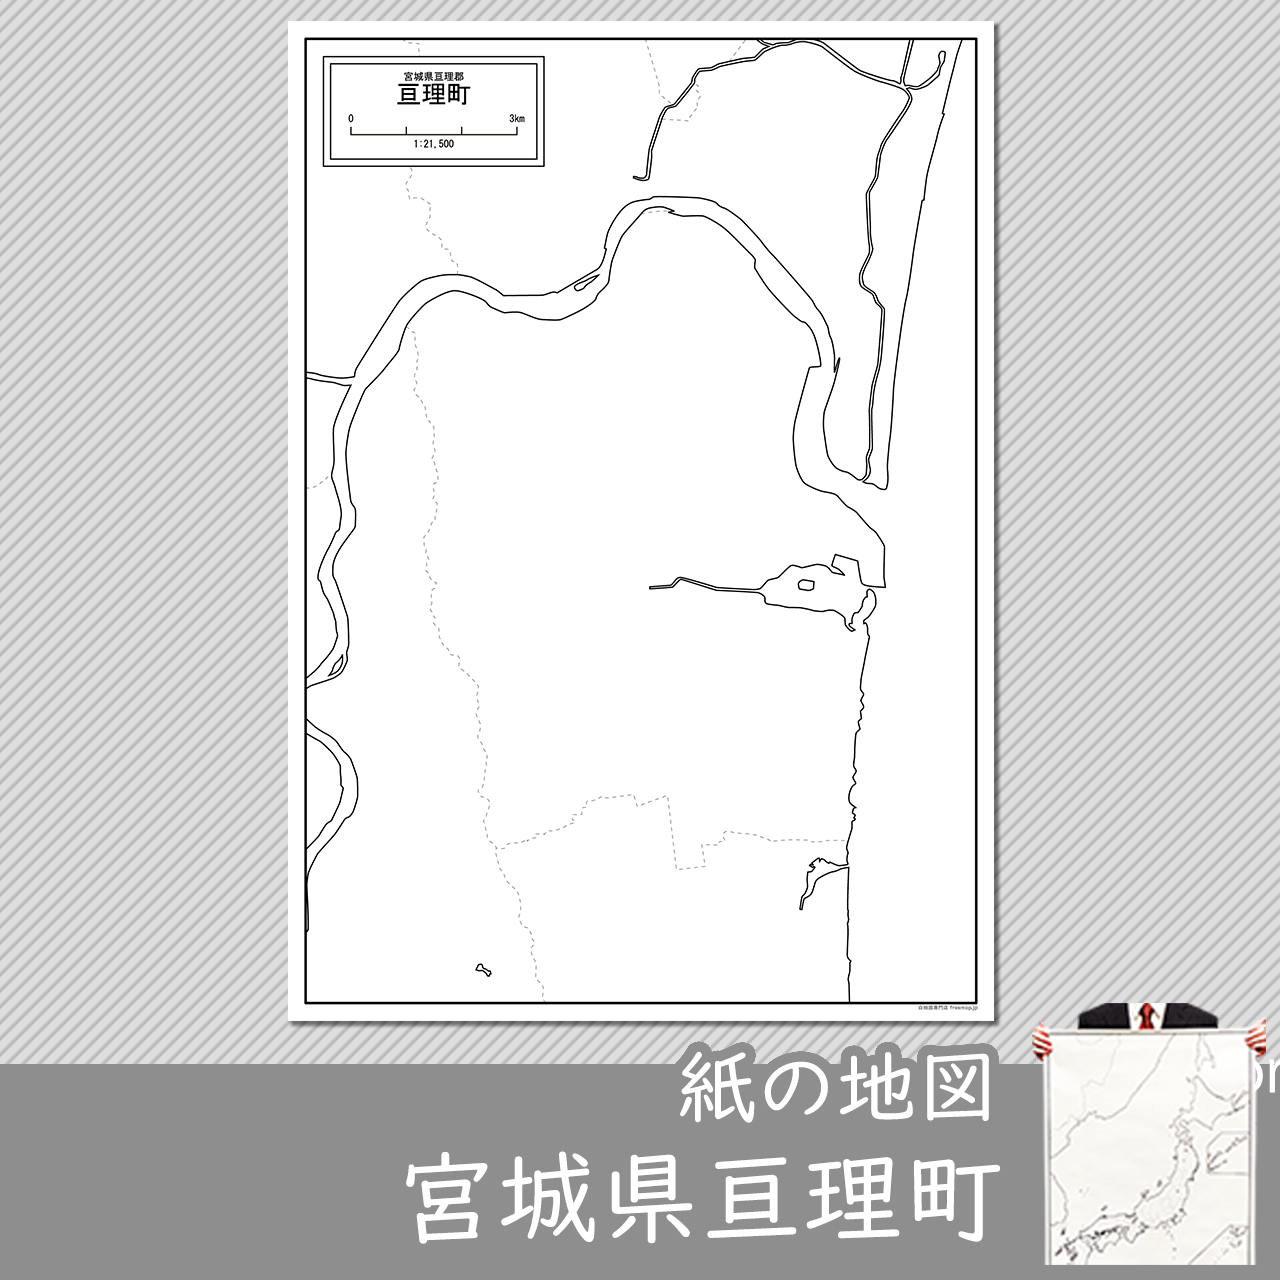 亘理町の紙の白地図のサムネイル